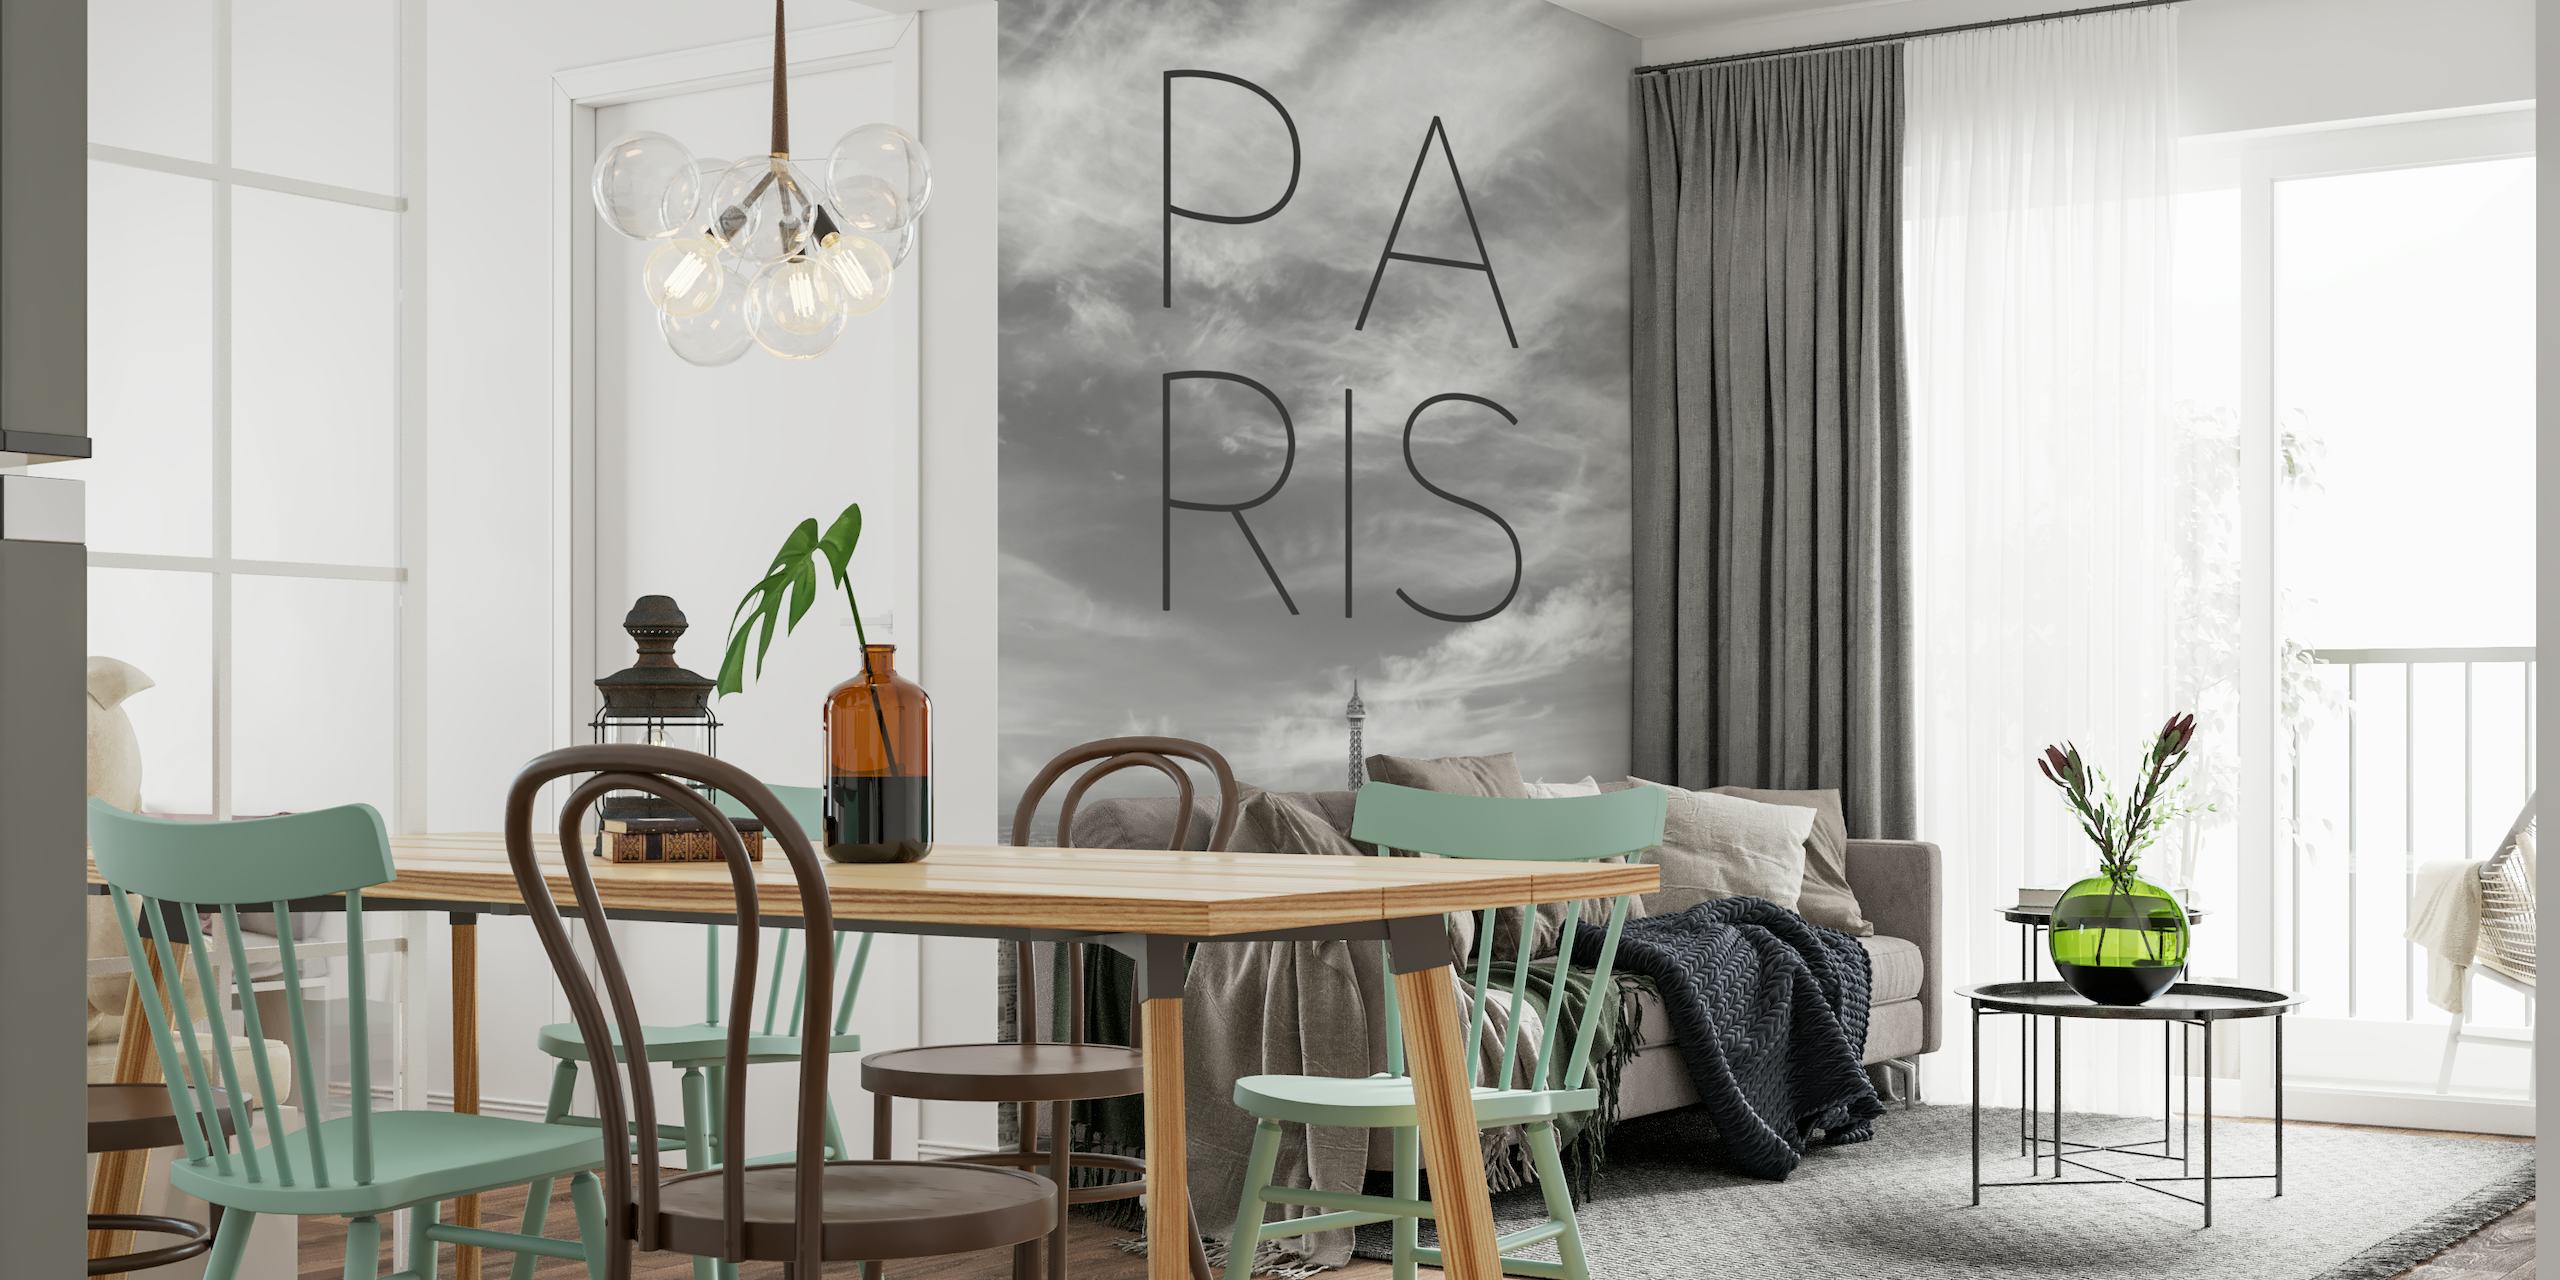 Paris Skyline with text papel pintado